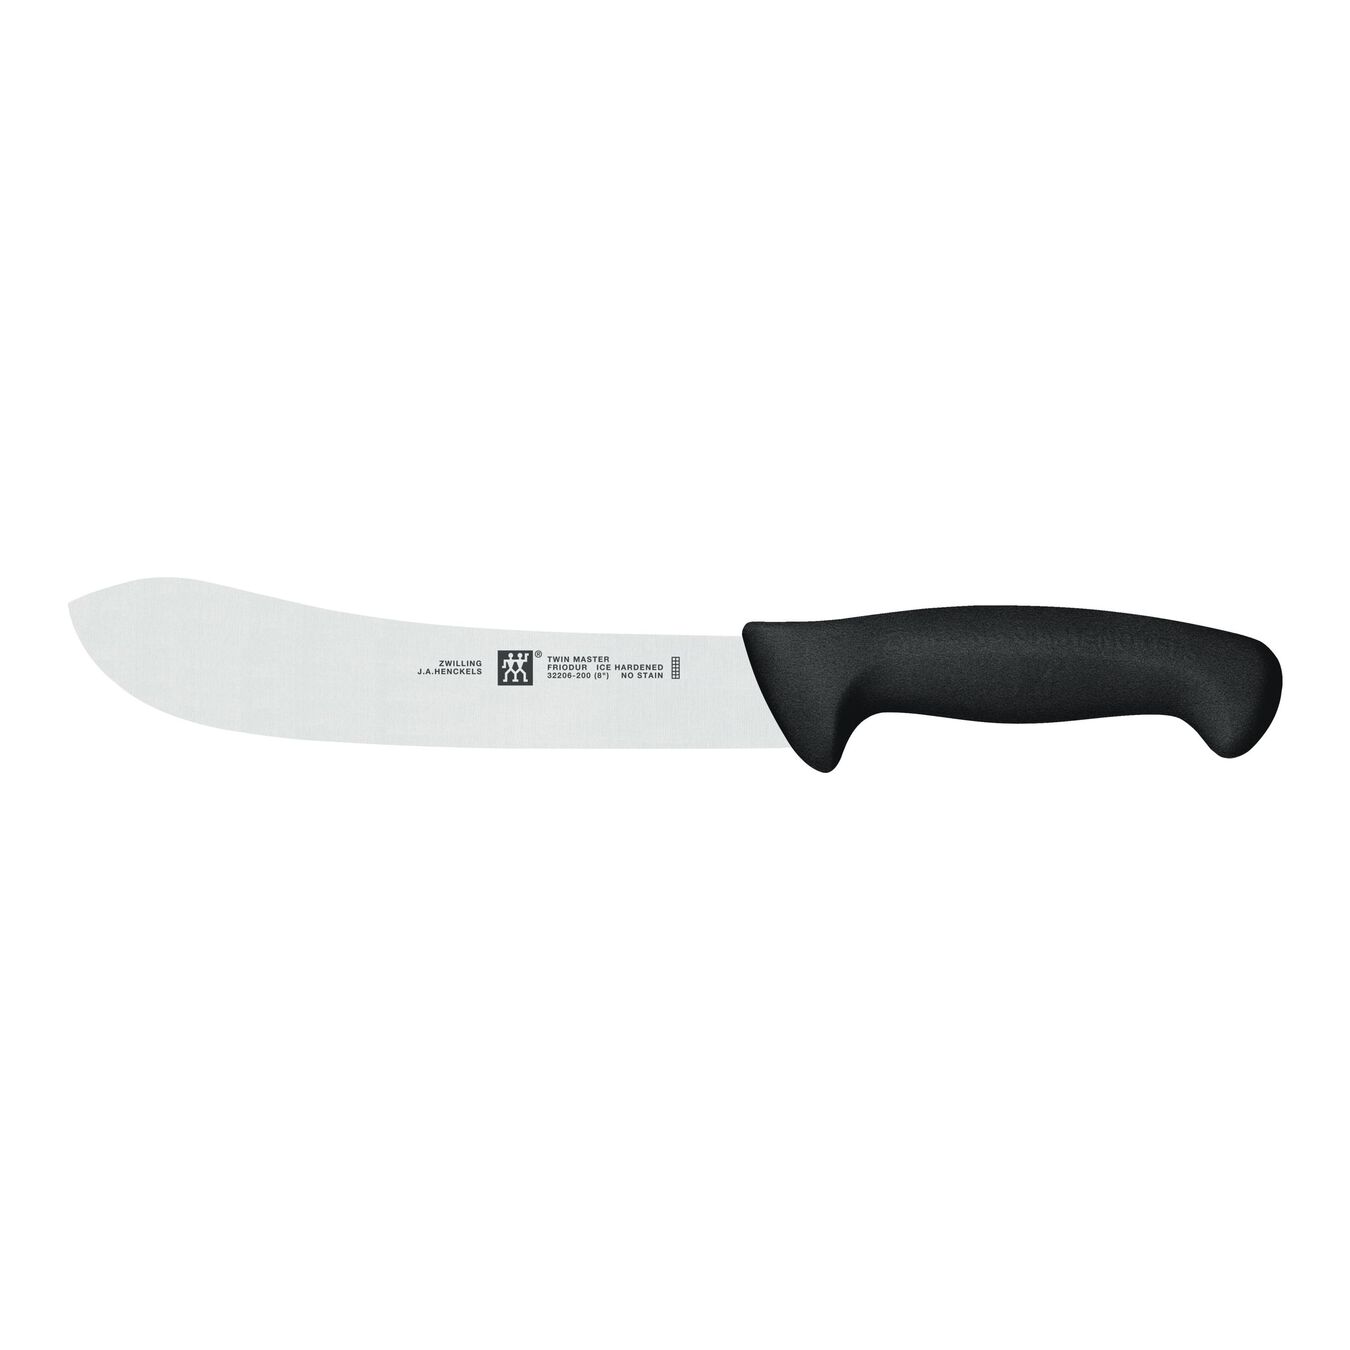 8-inch, Pro Butcher Knife - Black Handle,,large 1